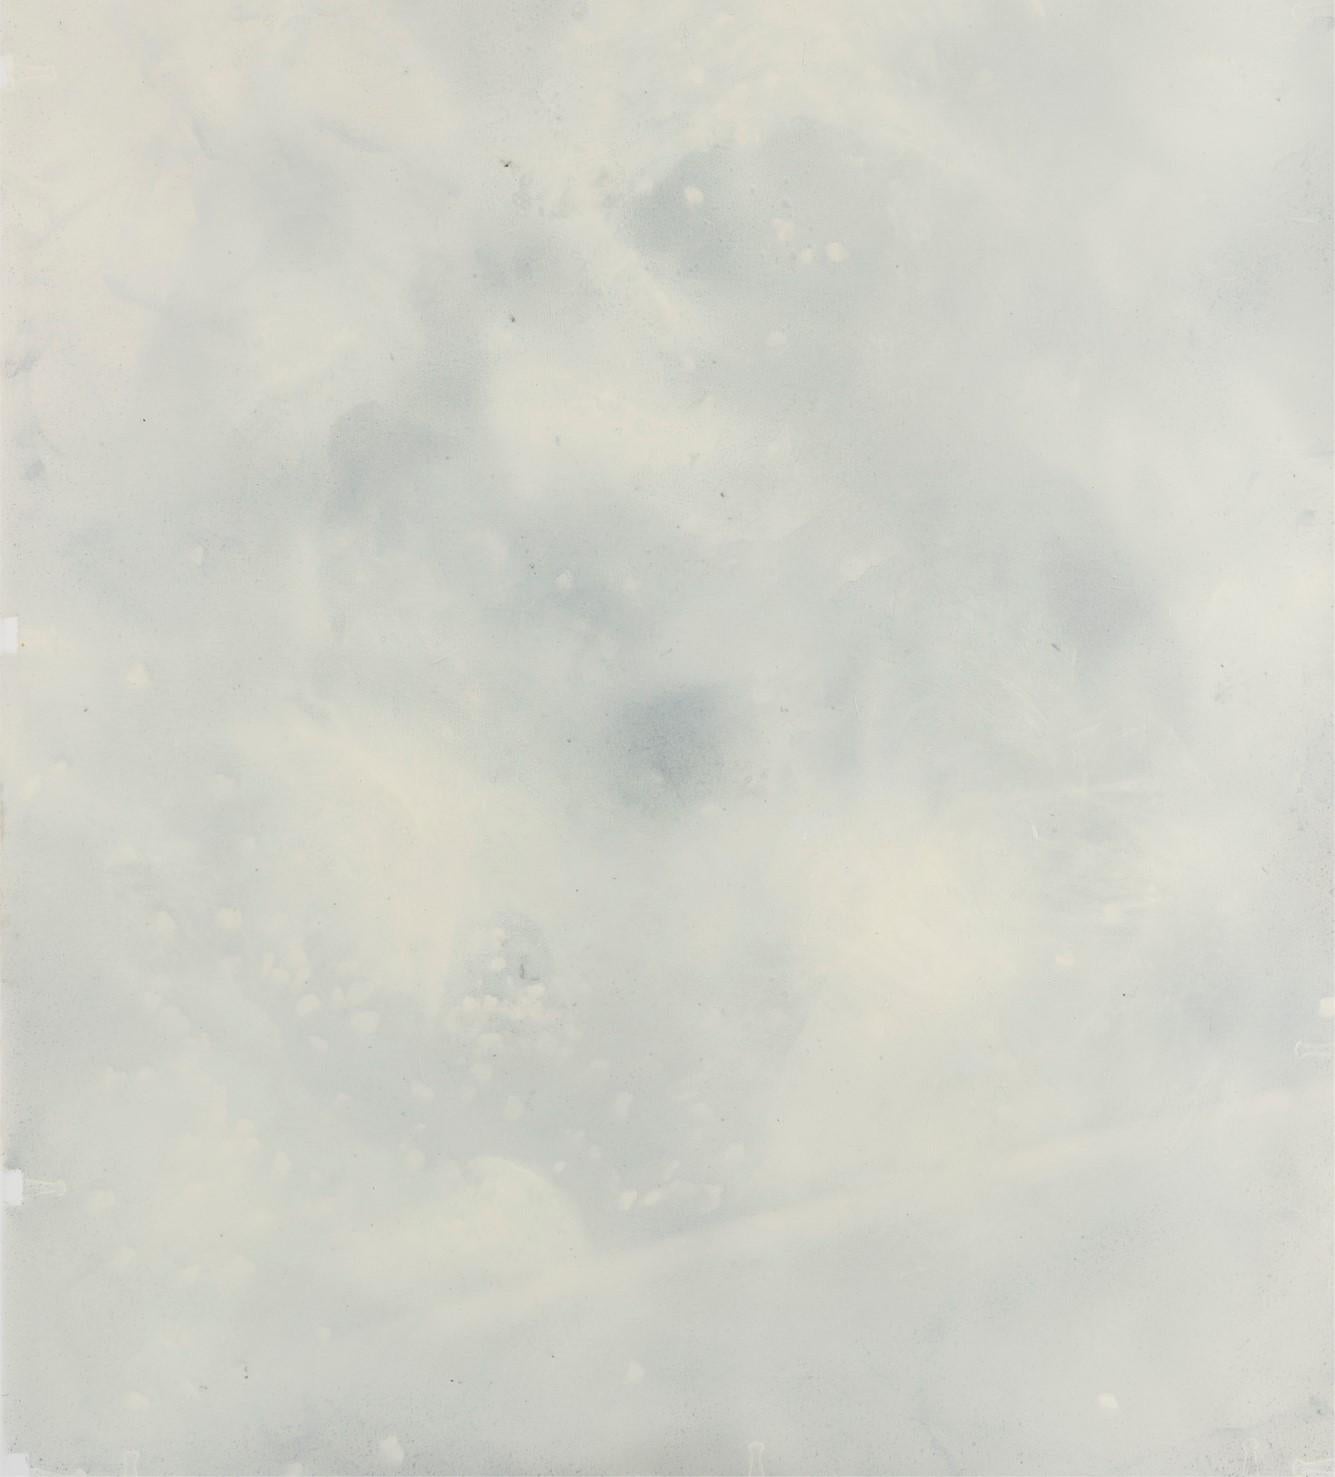 Sans titre 016 [Remains of the Remains 016] - Art contemporain, abstrait, gris - Expressionnisme abstrait Painting par Zsolt Berszán